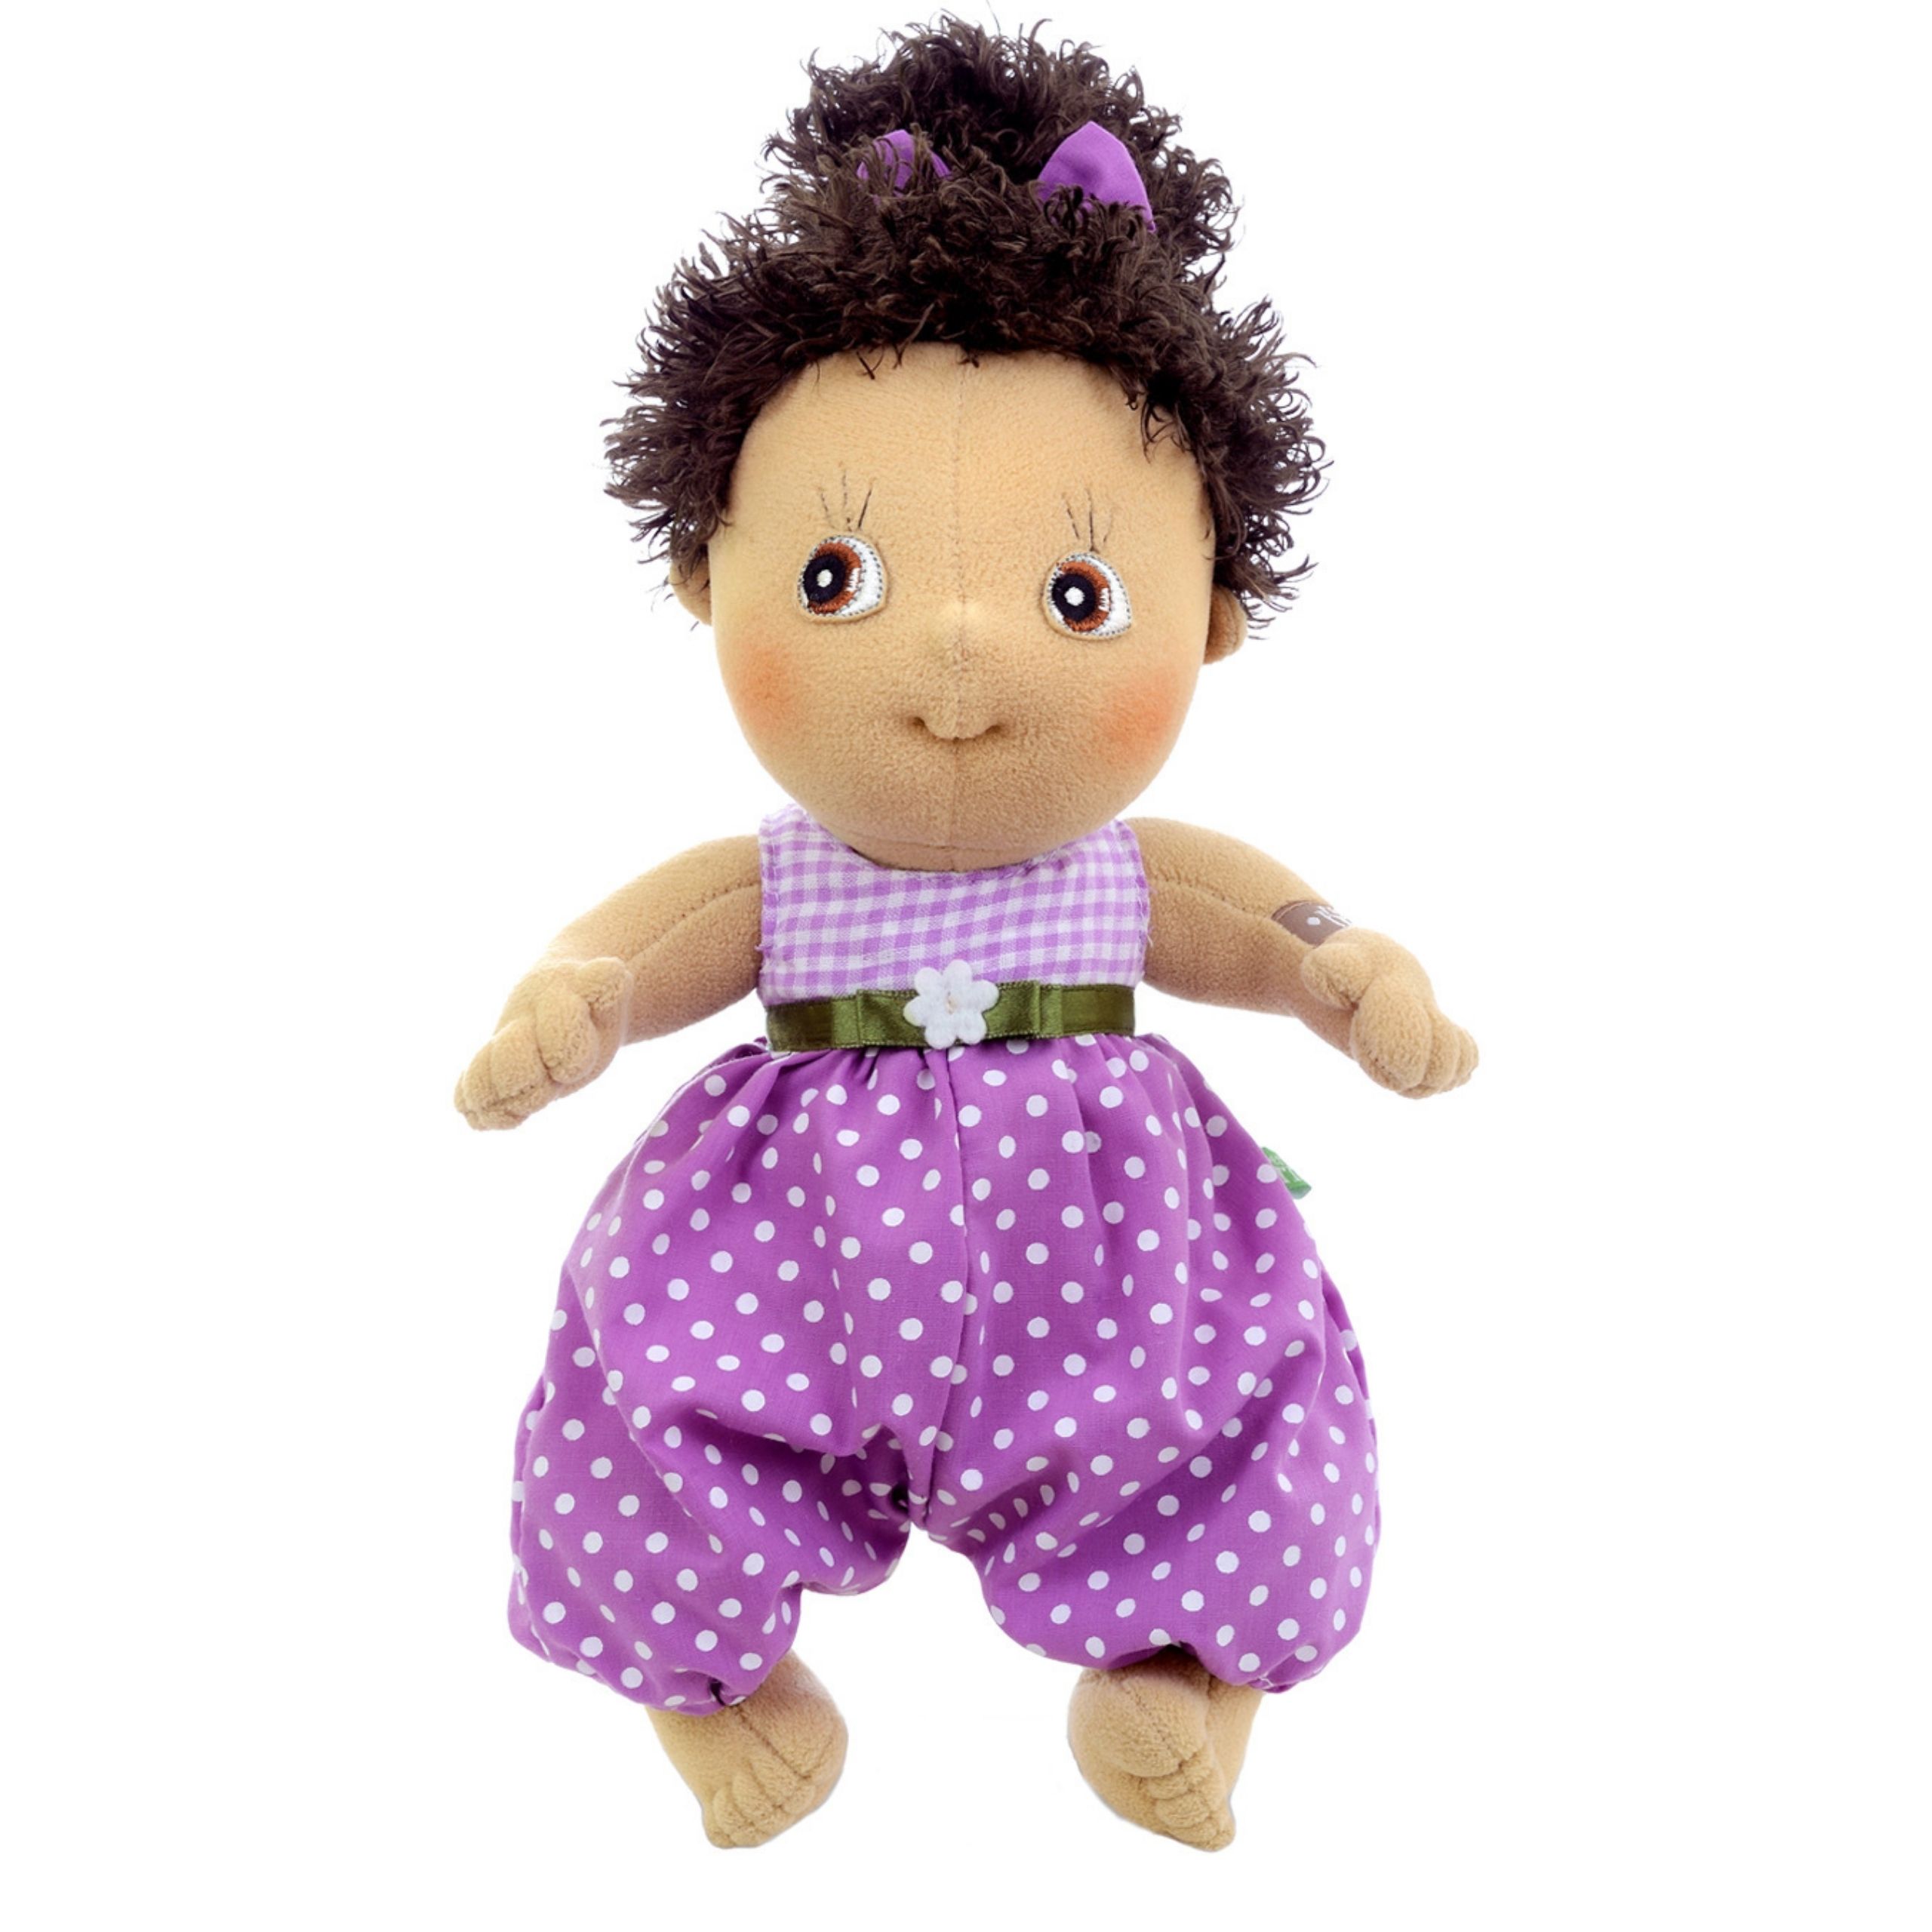 Dolls rubens barn soft doll hanna cutie classic